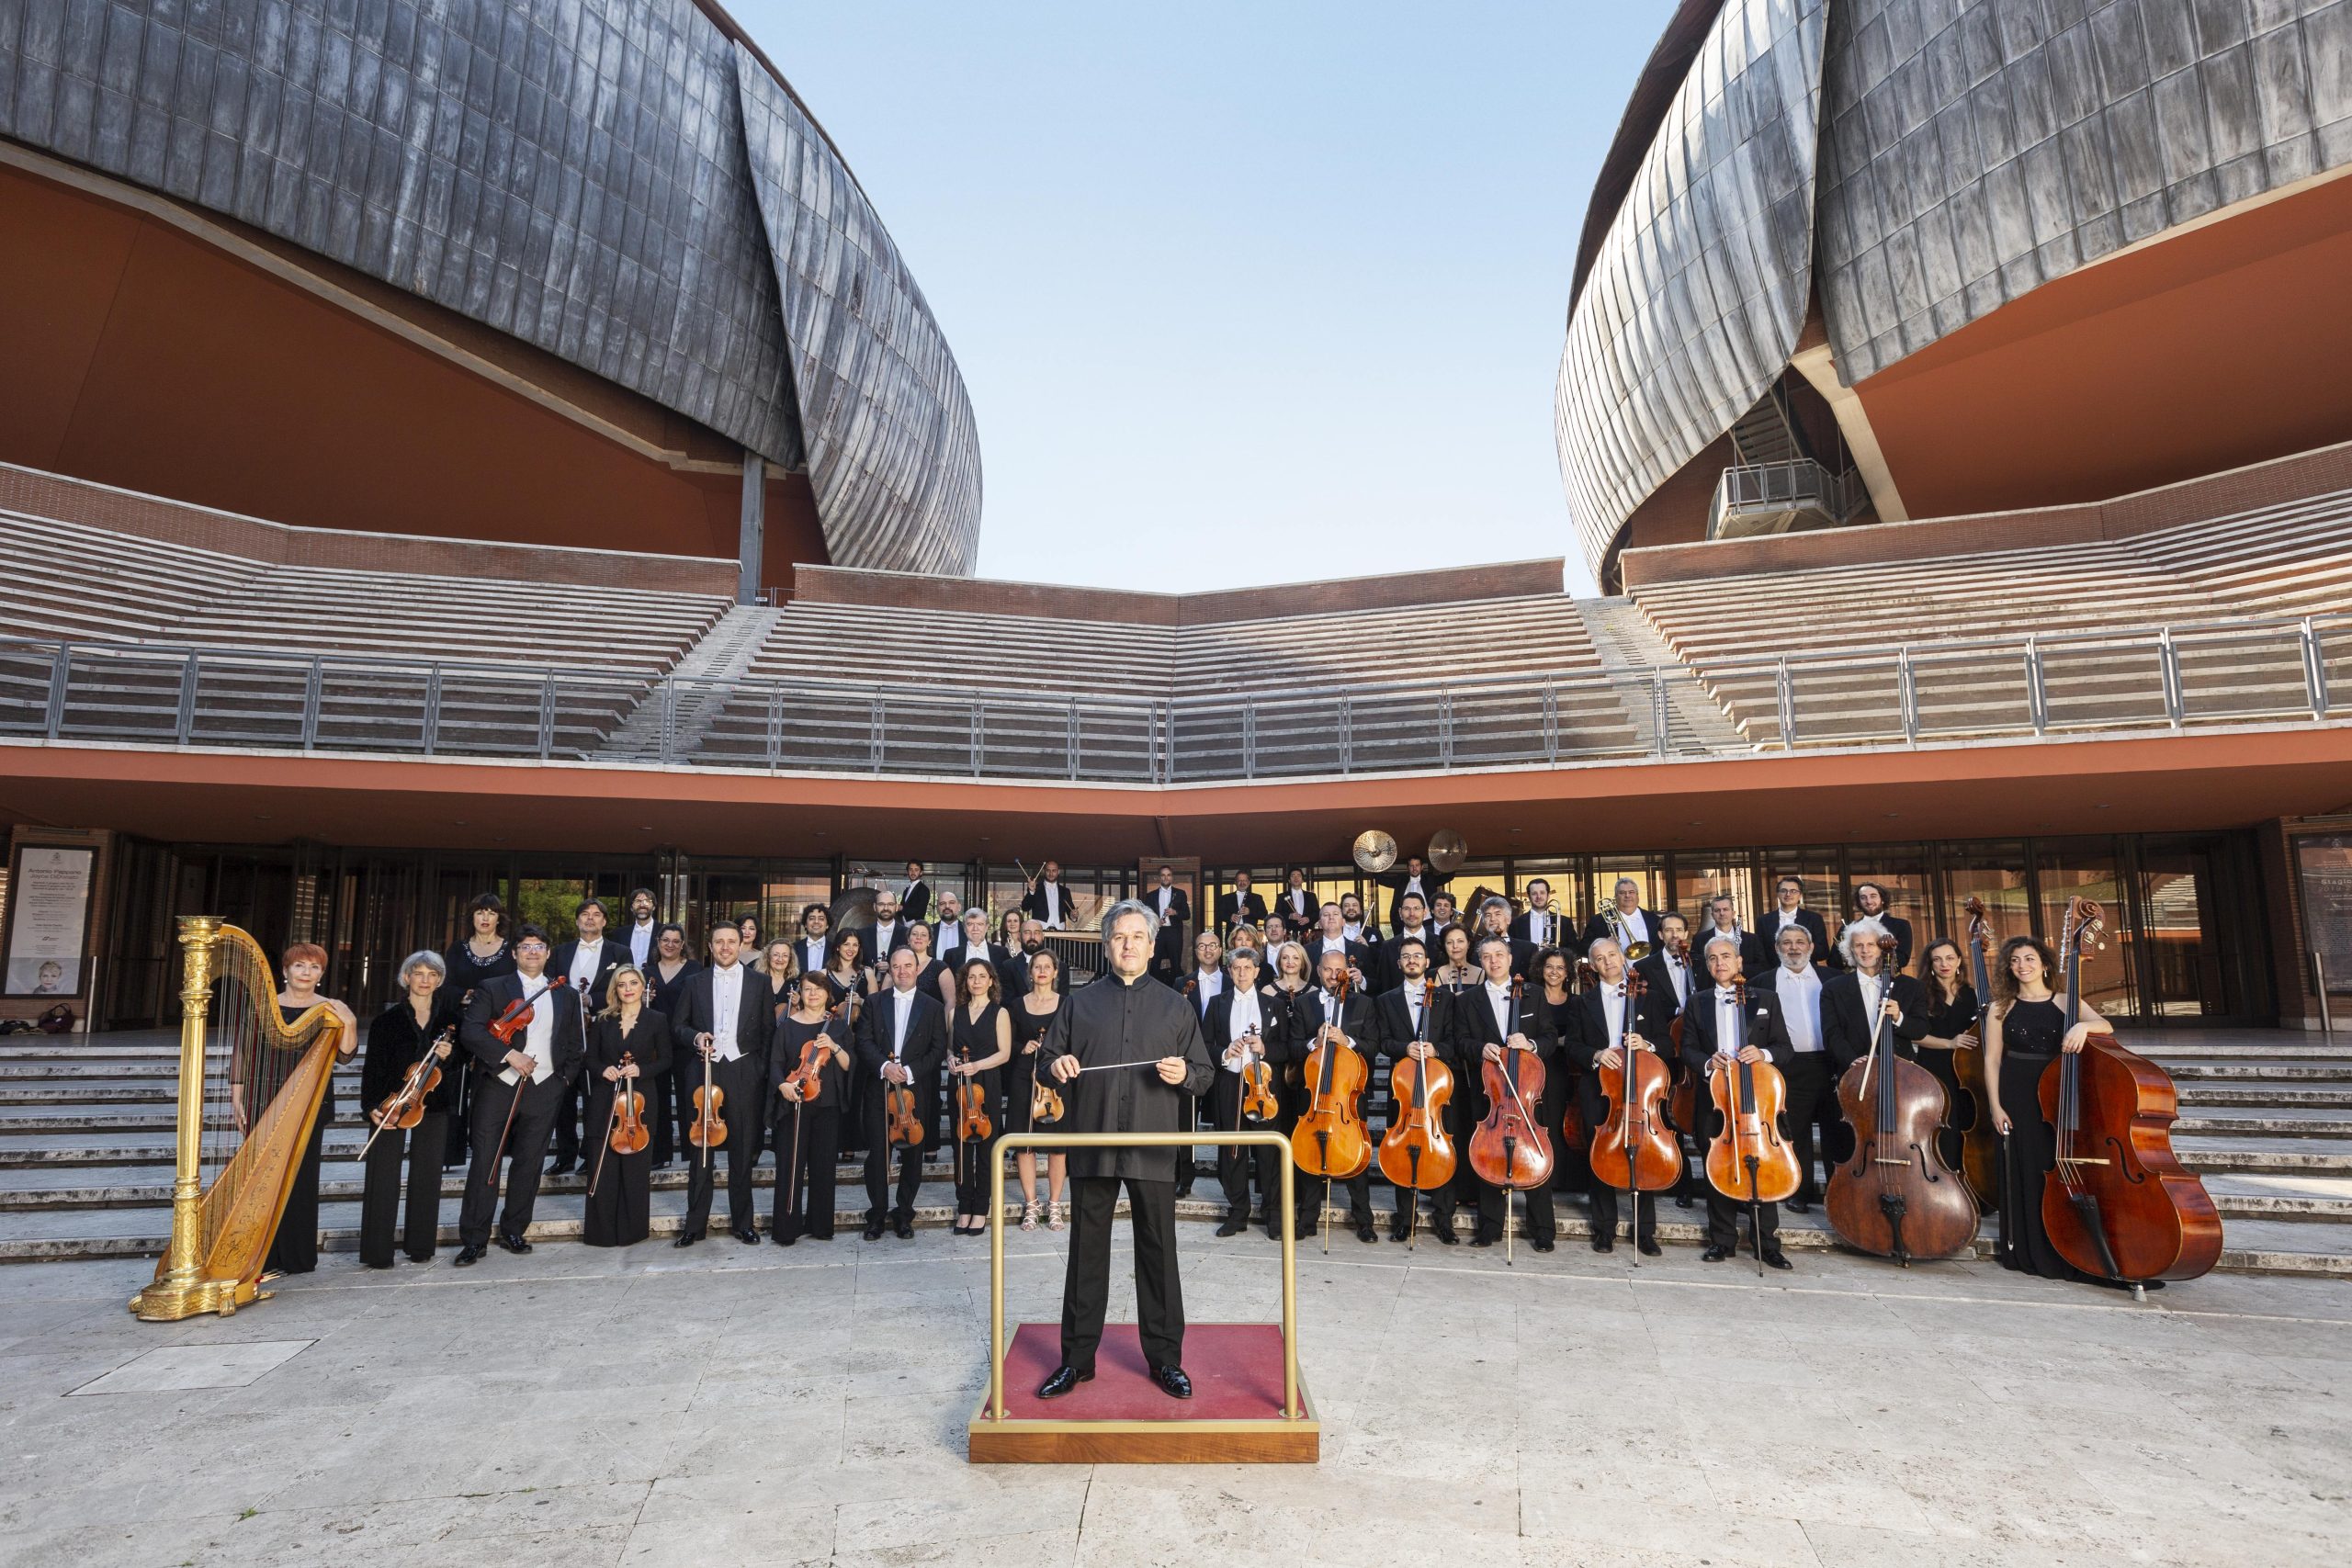 L’Orchestra dell’Accademia Nazionale di Santa Cecilia tra le migliori 20 orchestre del mondo